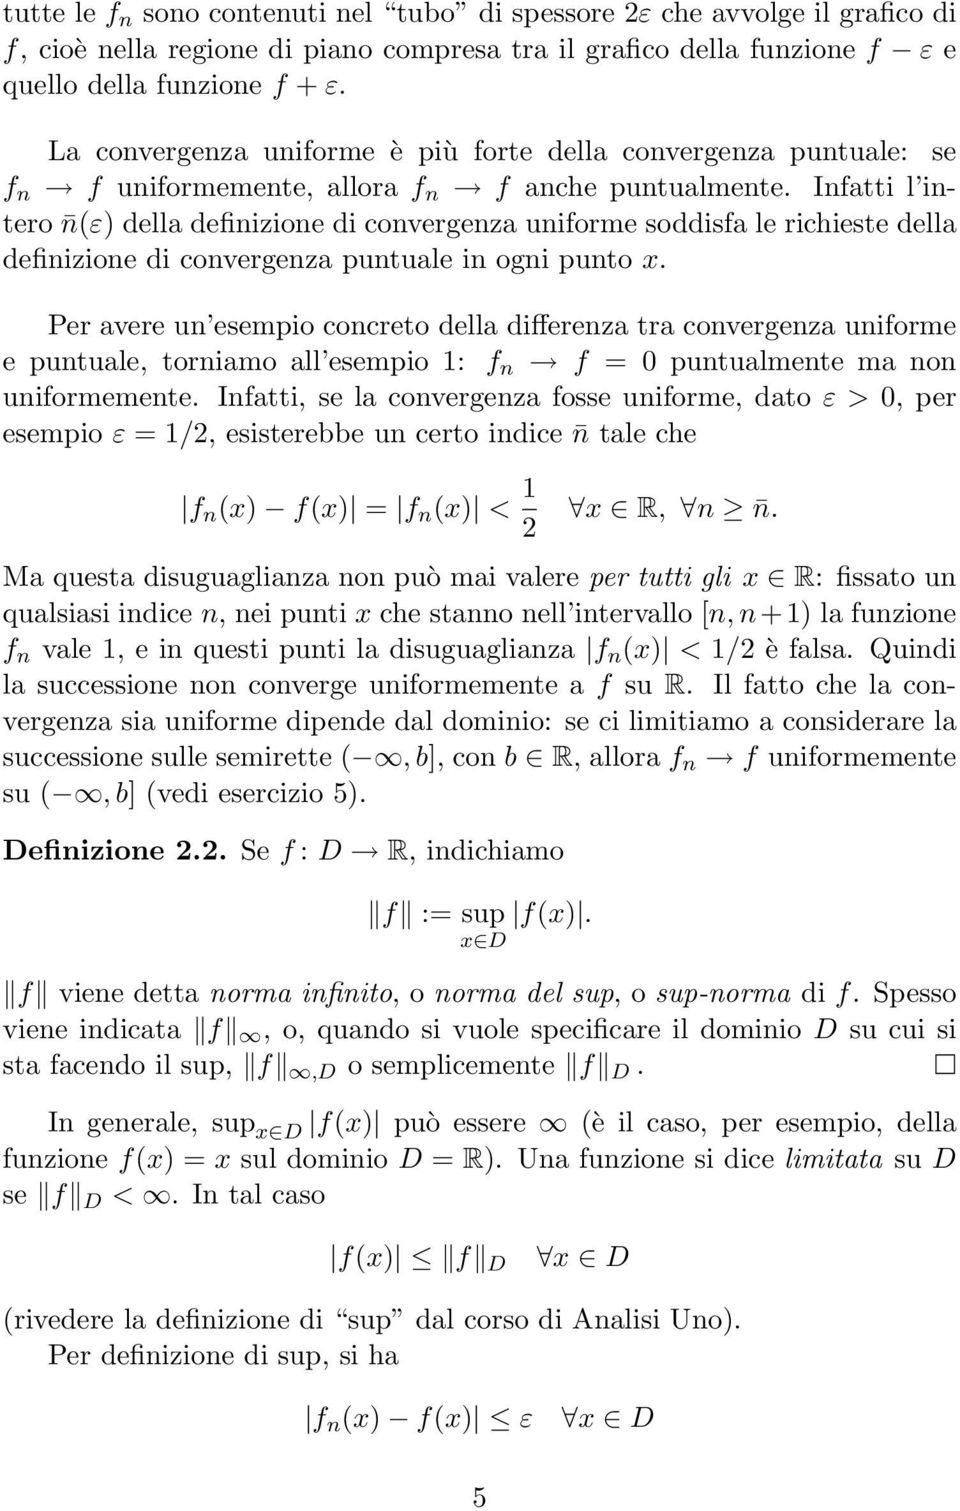 Inftti l intero nε dell definizione di convergenz uniforme soddisf le richieste dell definizione di convergenz puntule in ogni punto x.